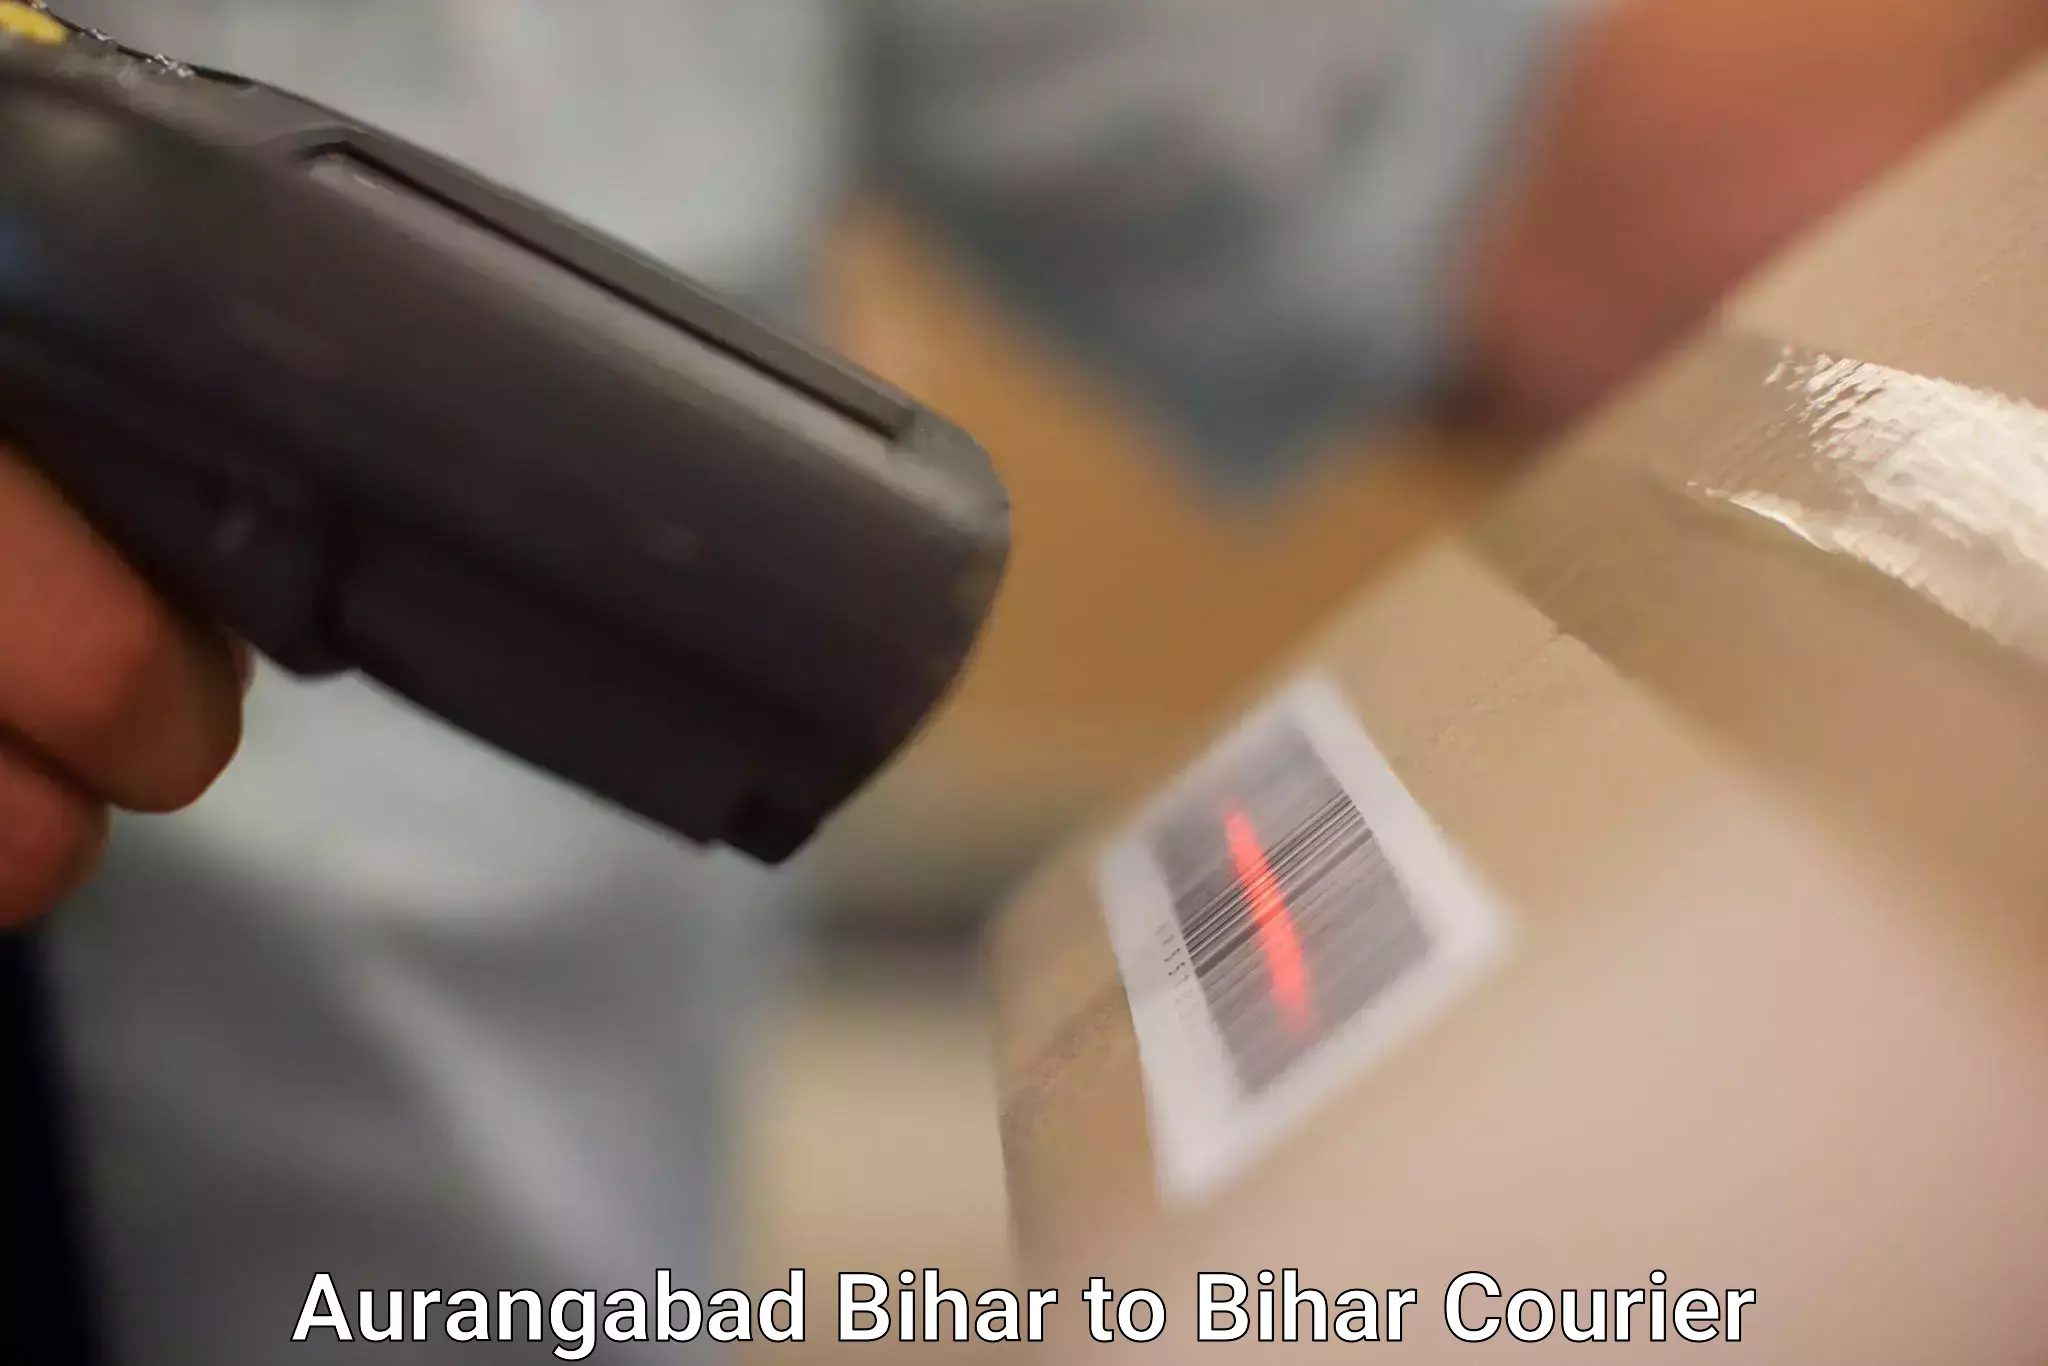 Lightweight courier Aurangabad Bihar to Sitamarhi